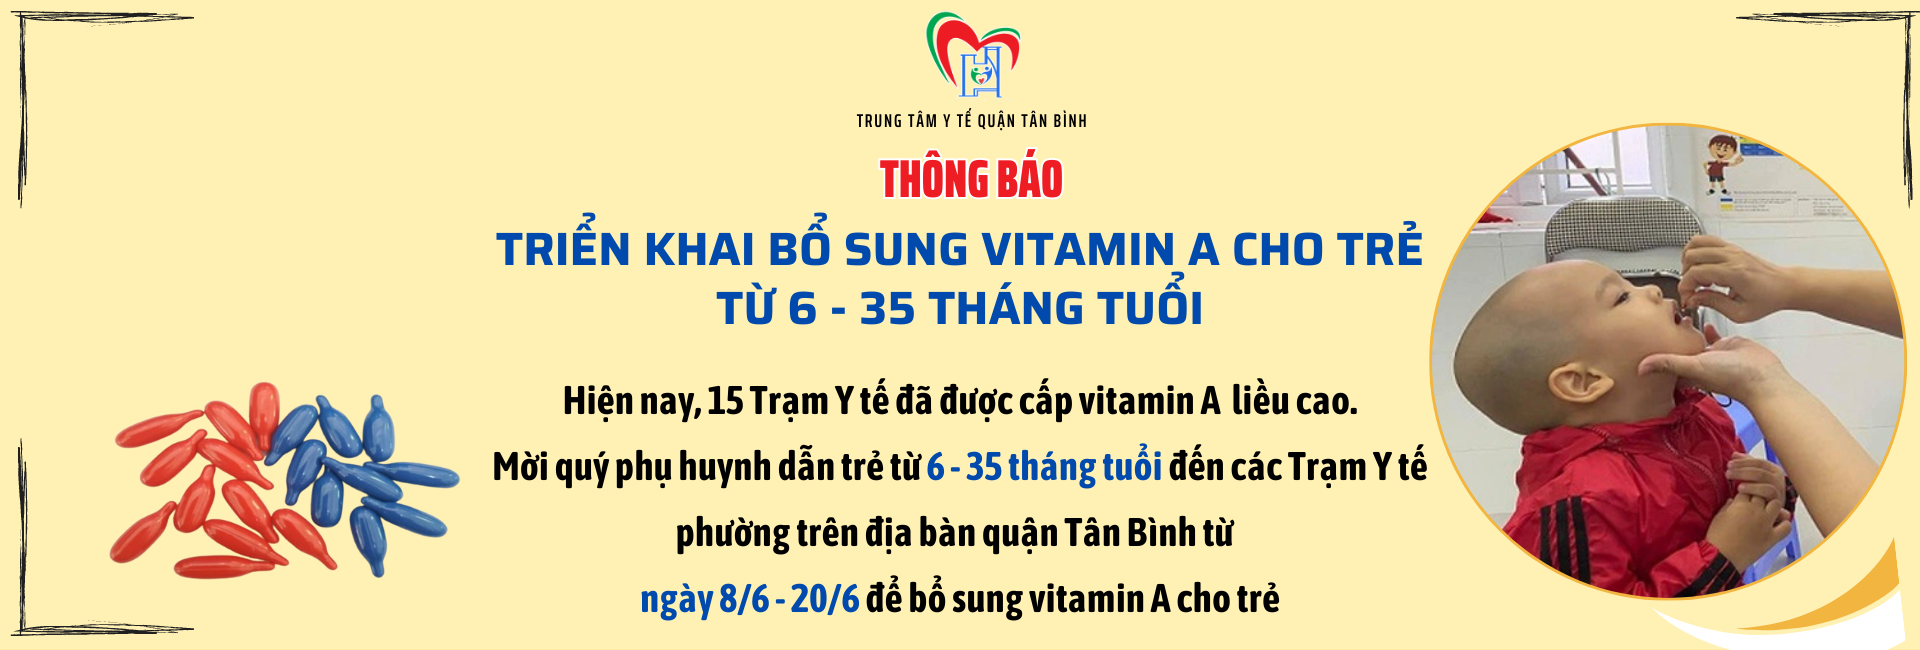 Thông báo triển khai bổ sung vitamin A đợt 1 cho trẻ từ 6-35 tháng tuổi